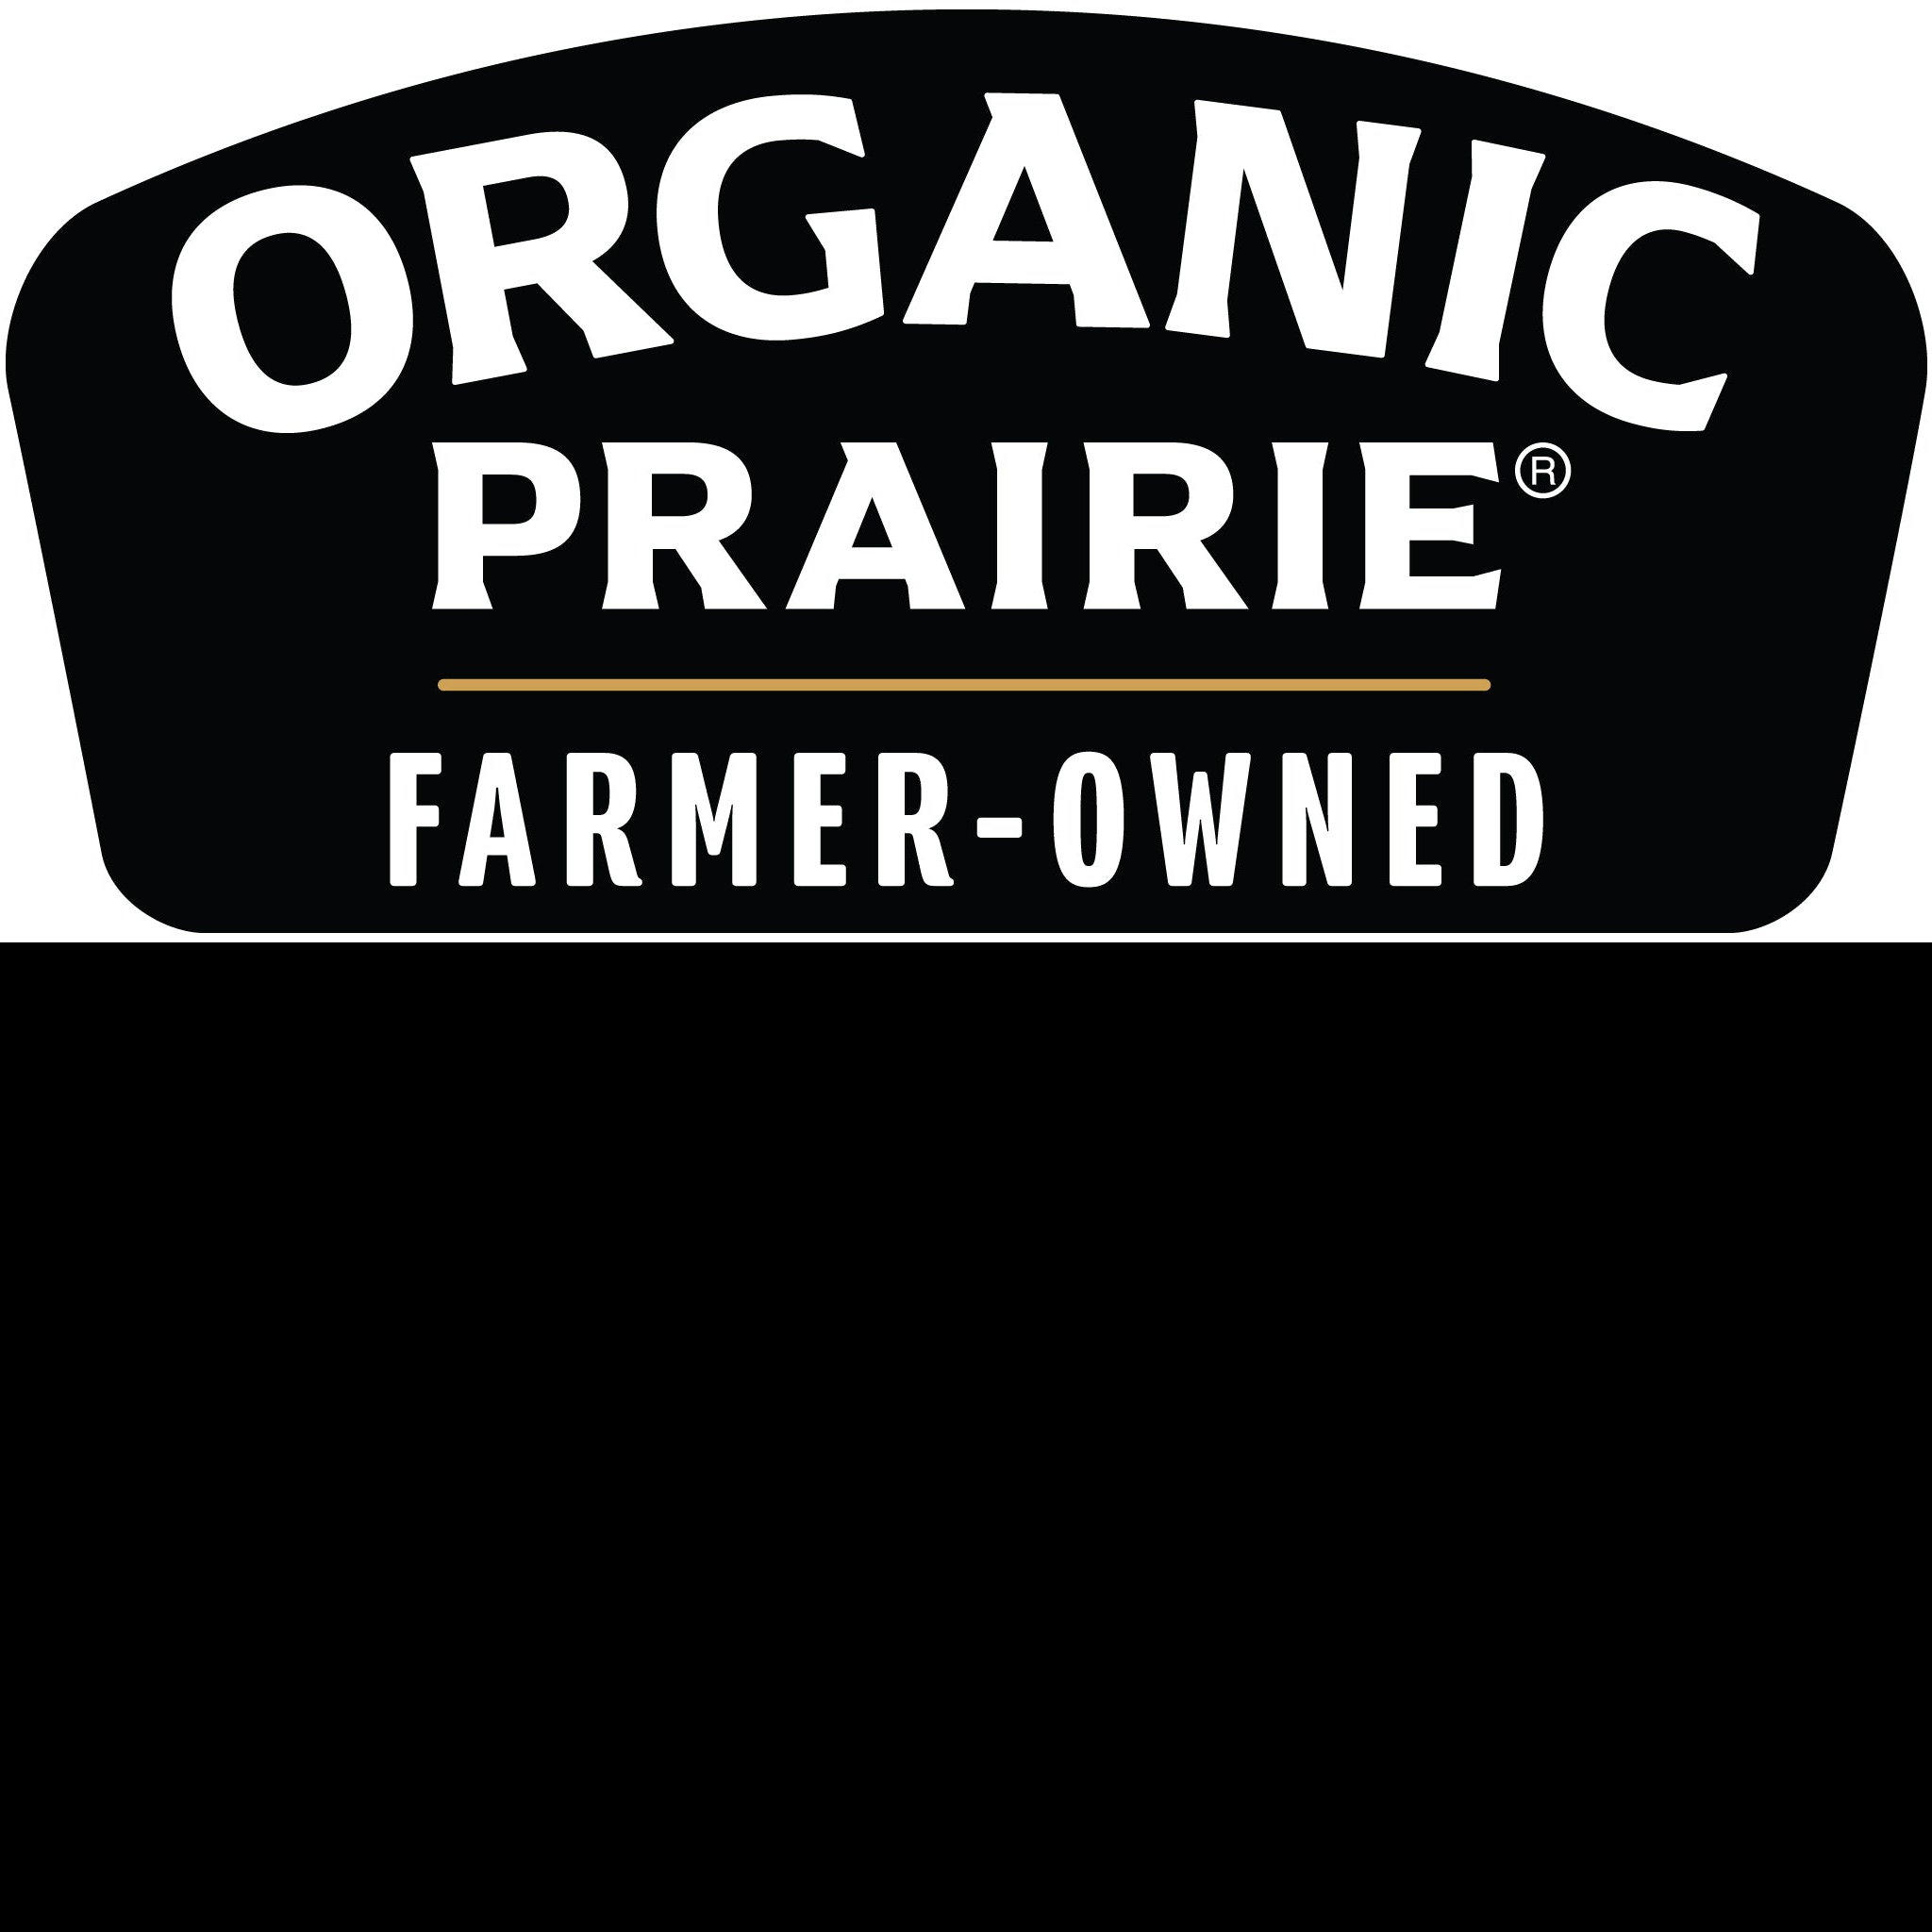 www.organicprairie.com